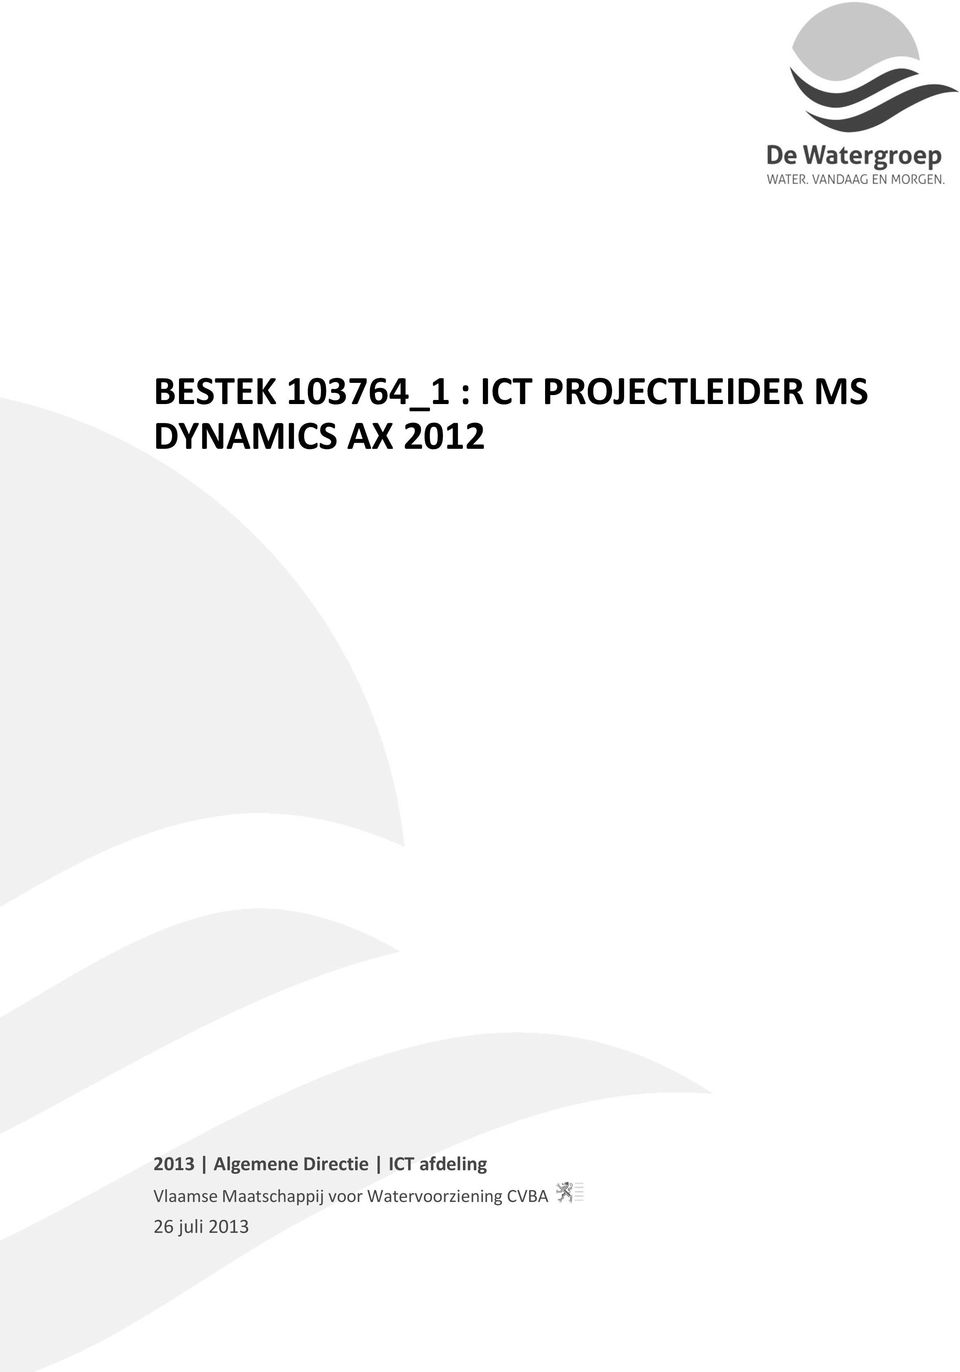 Directie ICT afdeling Vlaamse